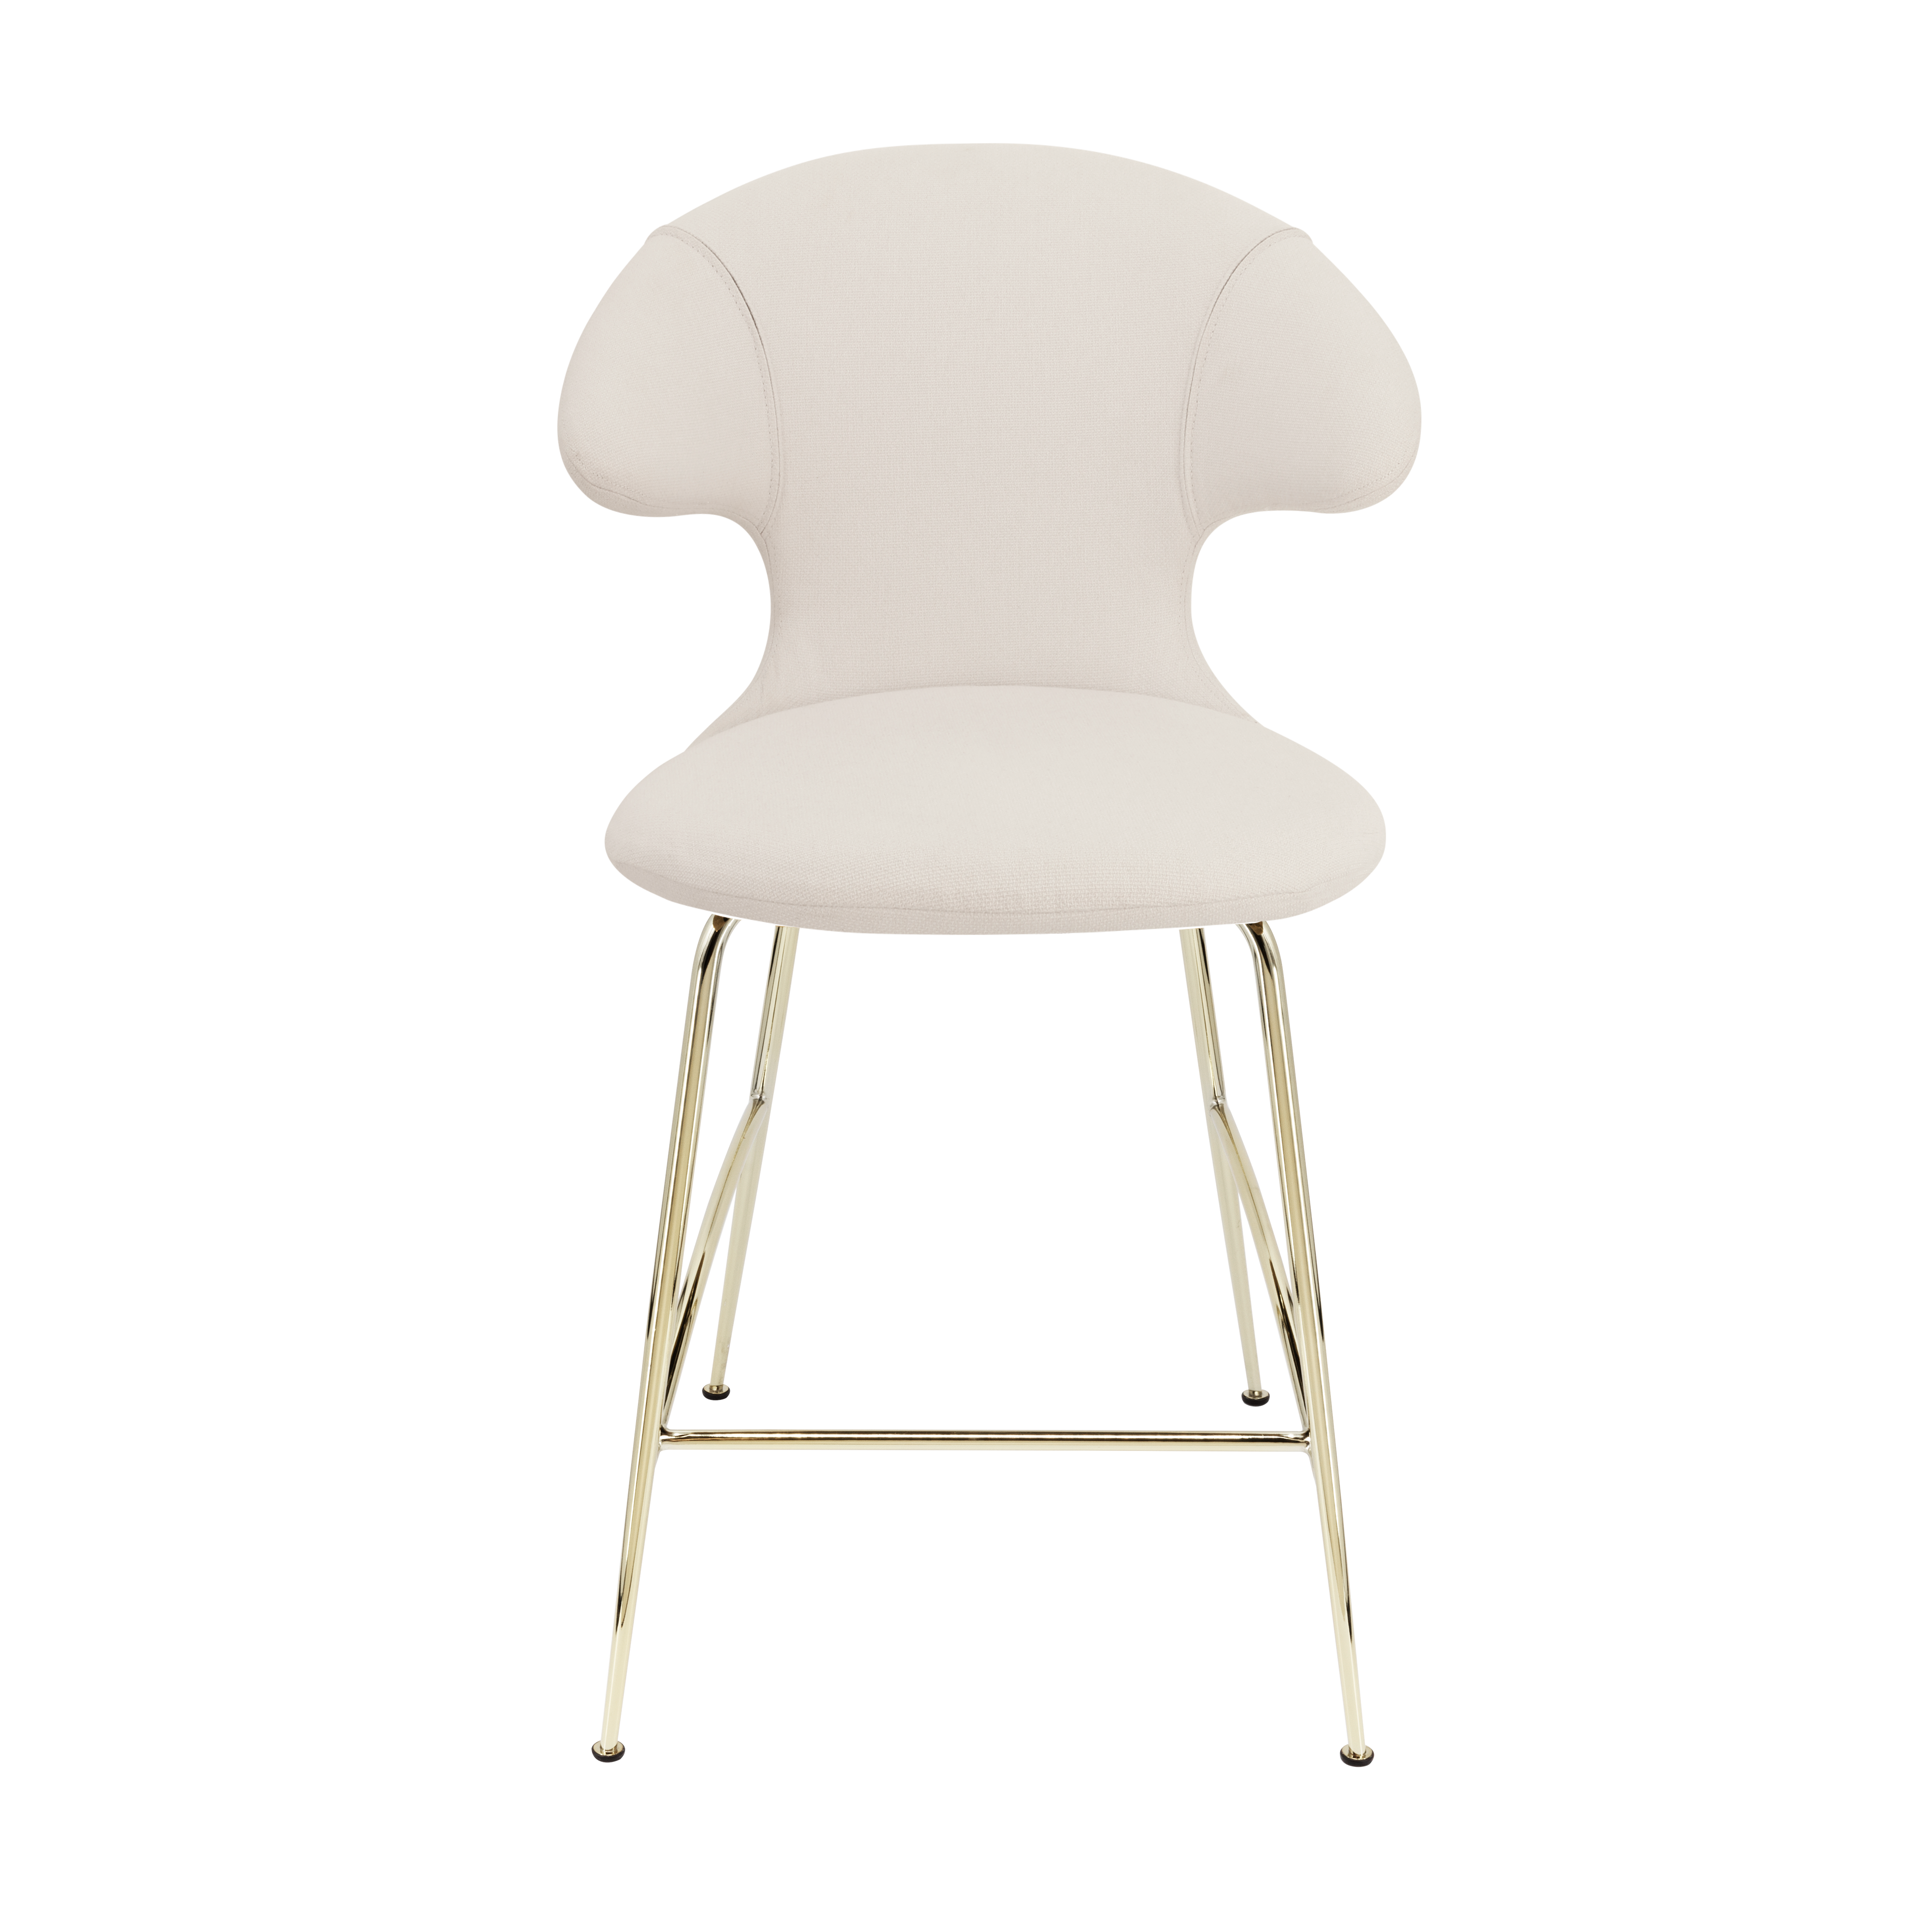 Time Flies Counter Stuhl in White Sands präsentiert im Onlineshop von KAQTU Design AG. Barstuhl mit Armlehne ist von Umage